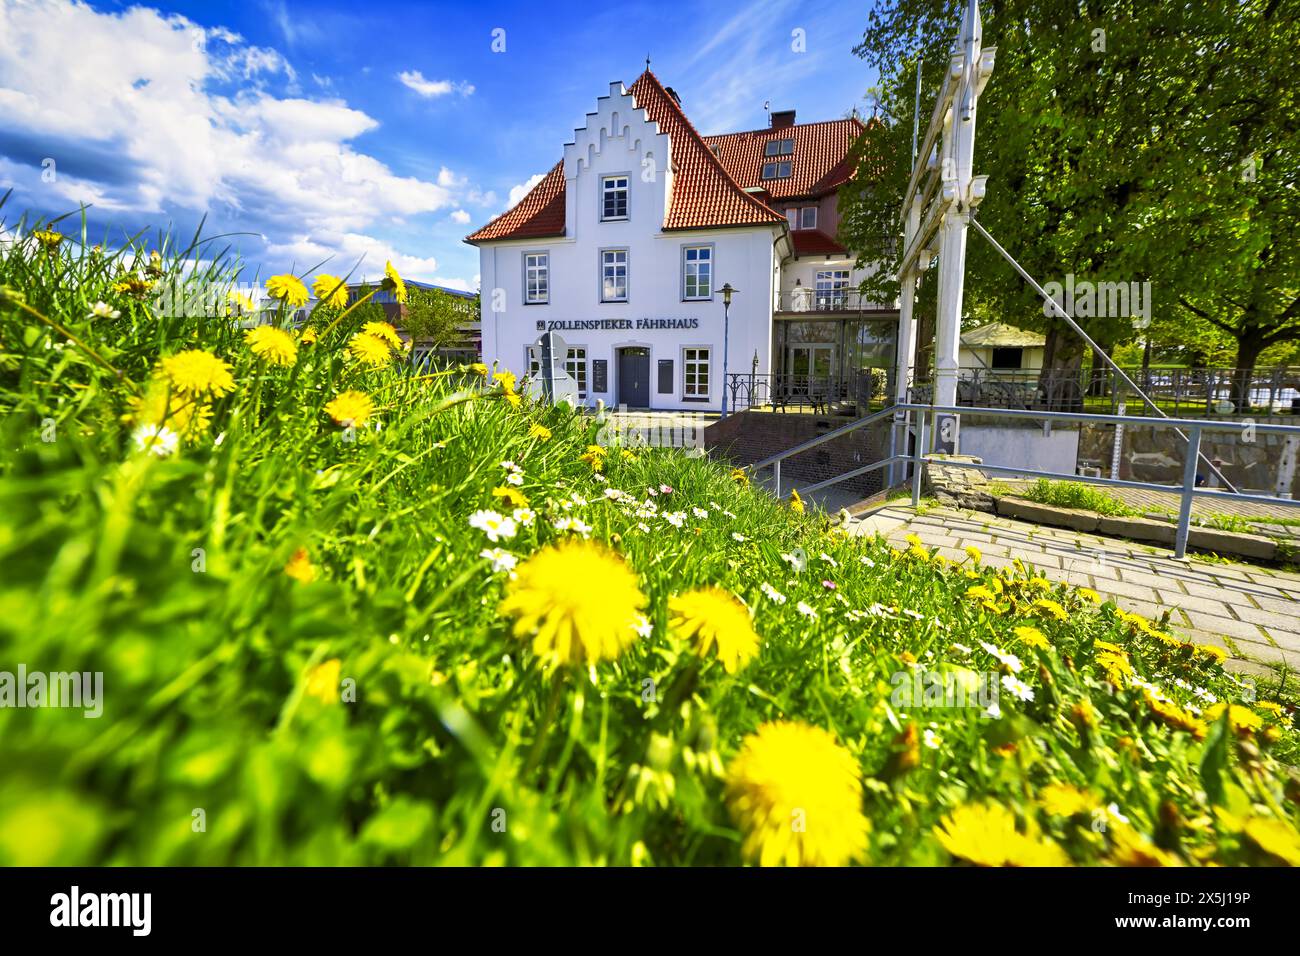 Zollenspieker Fährhaus mit Frühlingsblumen in Kirchwerder, Amburgo, Germania Foto Stock